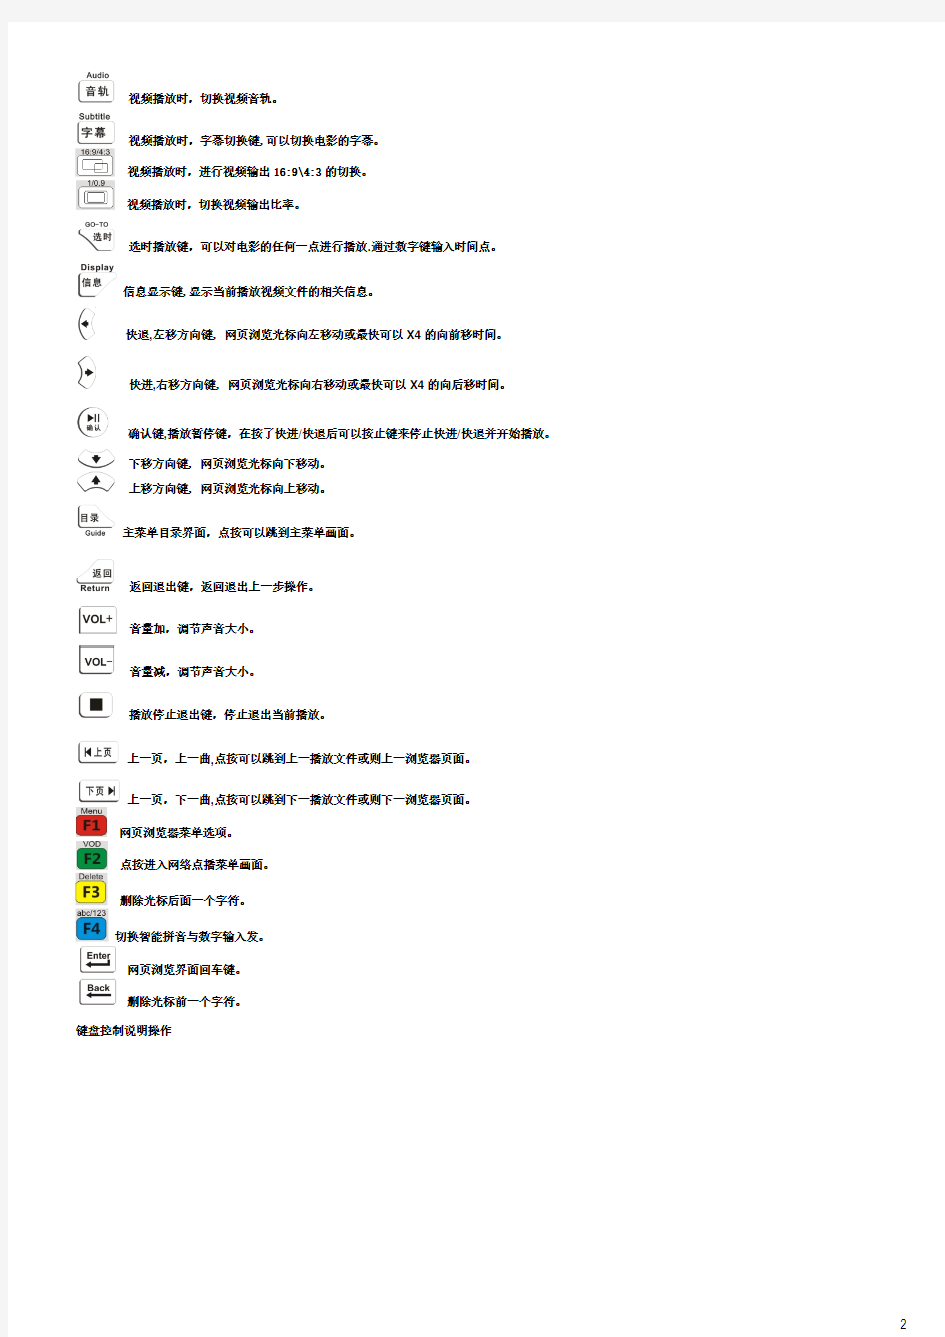 蓝天使Q1-中文使用说明书-blue-20110829-1700